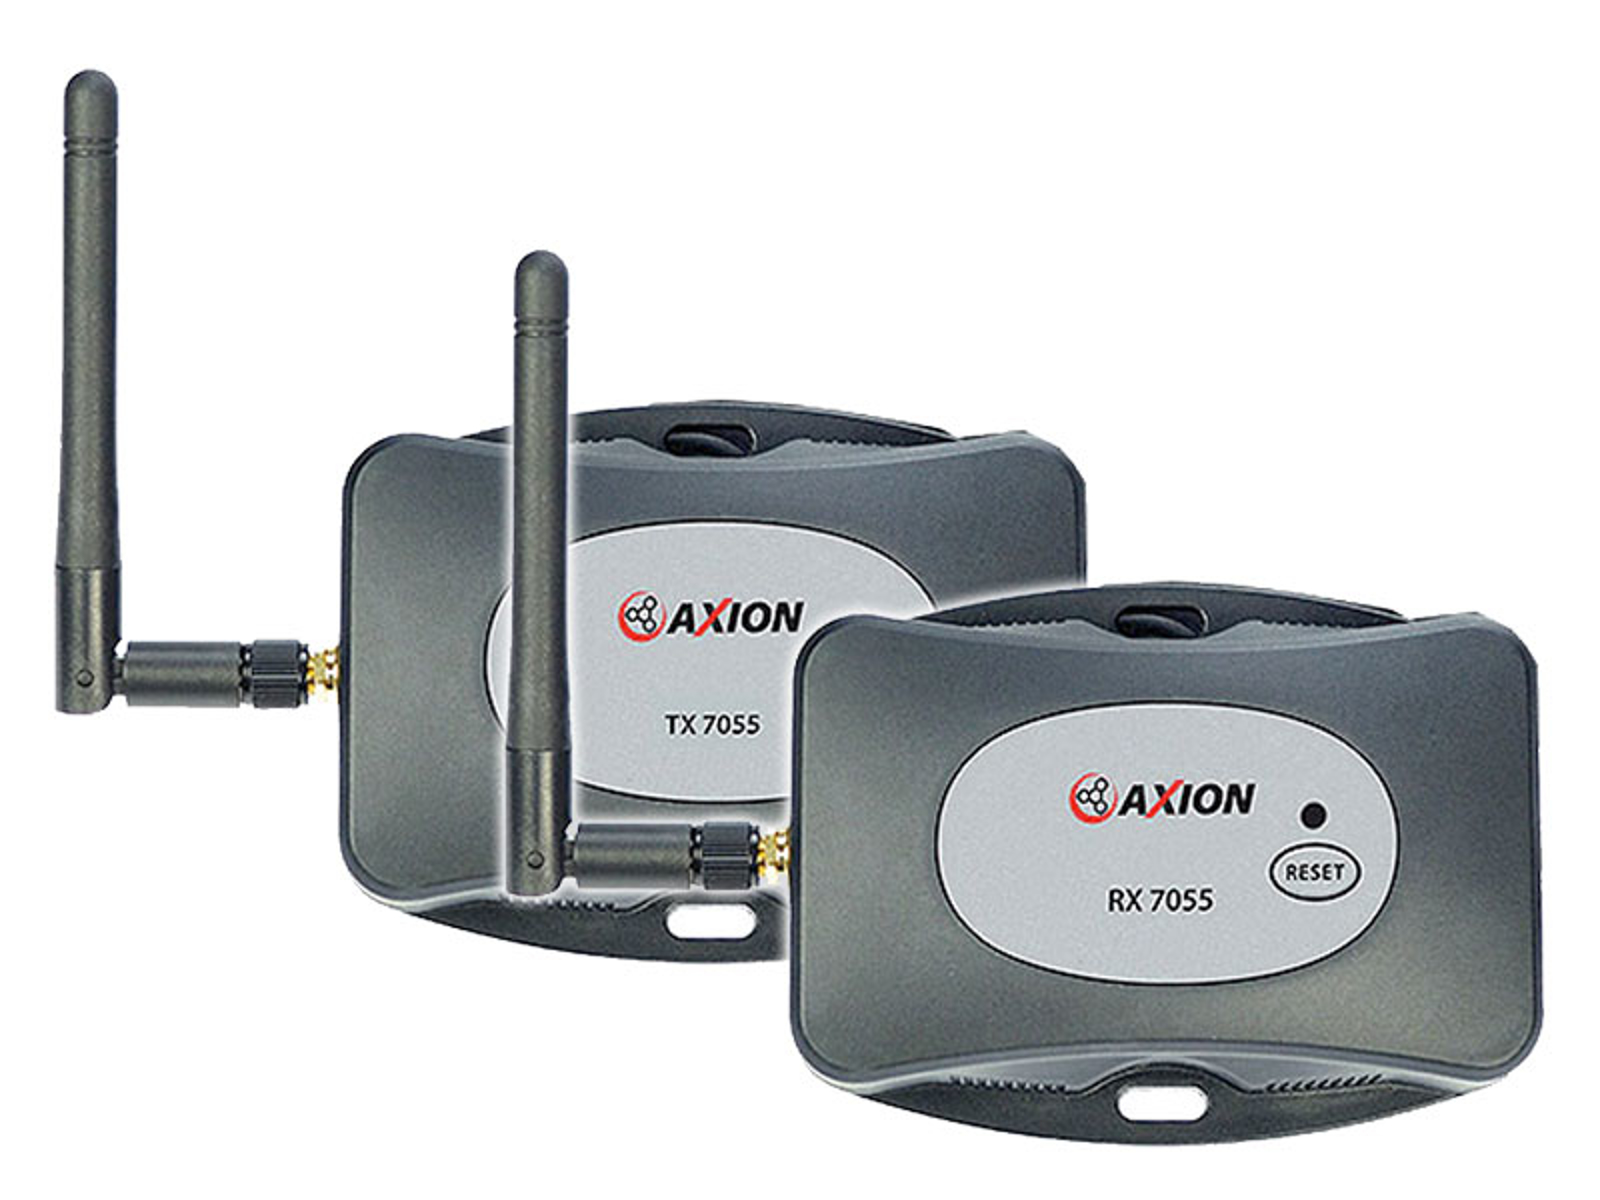 AXION DWS-Set 3 - Digital trådløs modtager/sender sæt